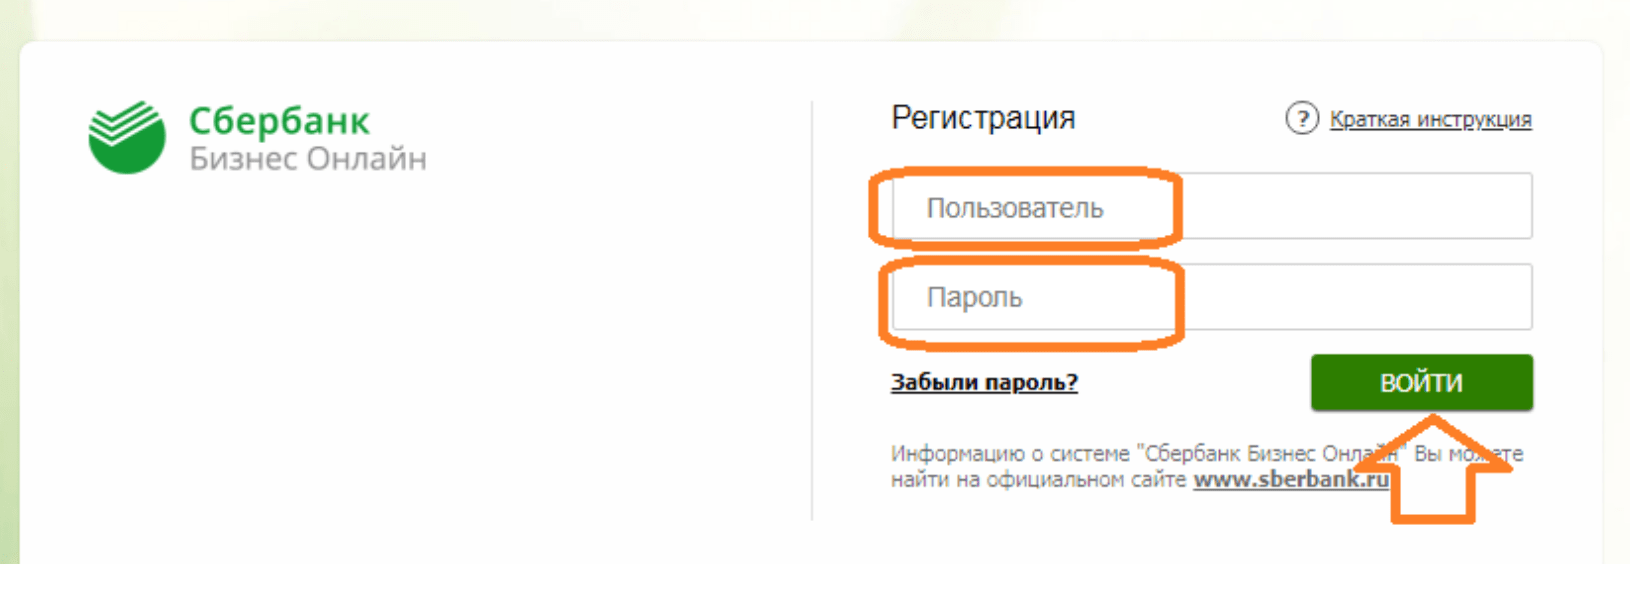 Официальный сайт сбербанка россии онлайн личный кабинет вход